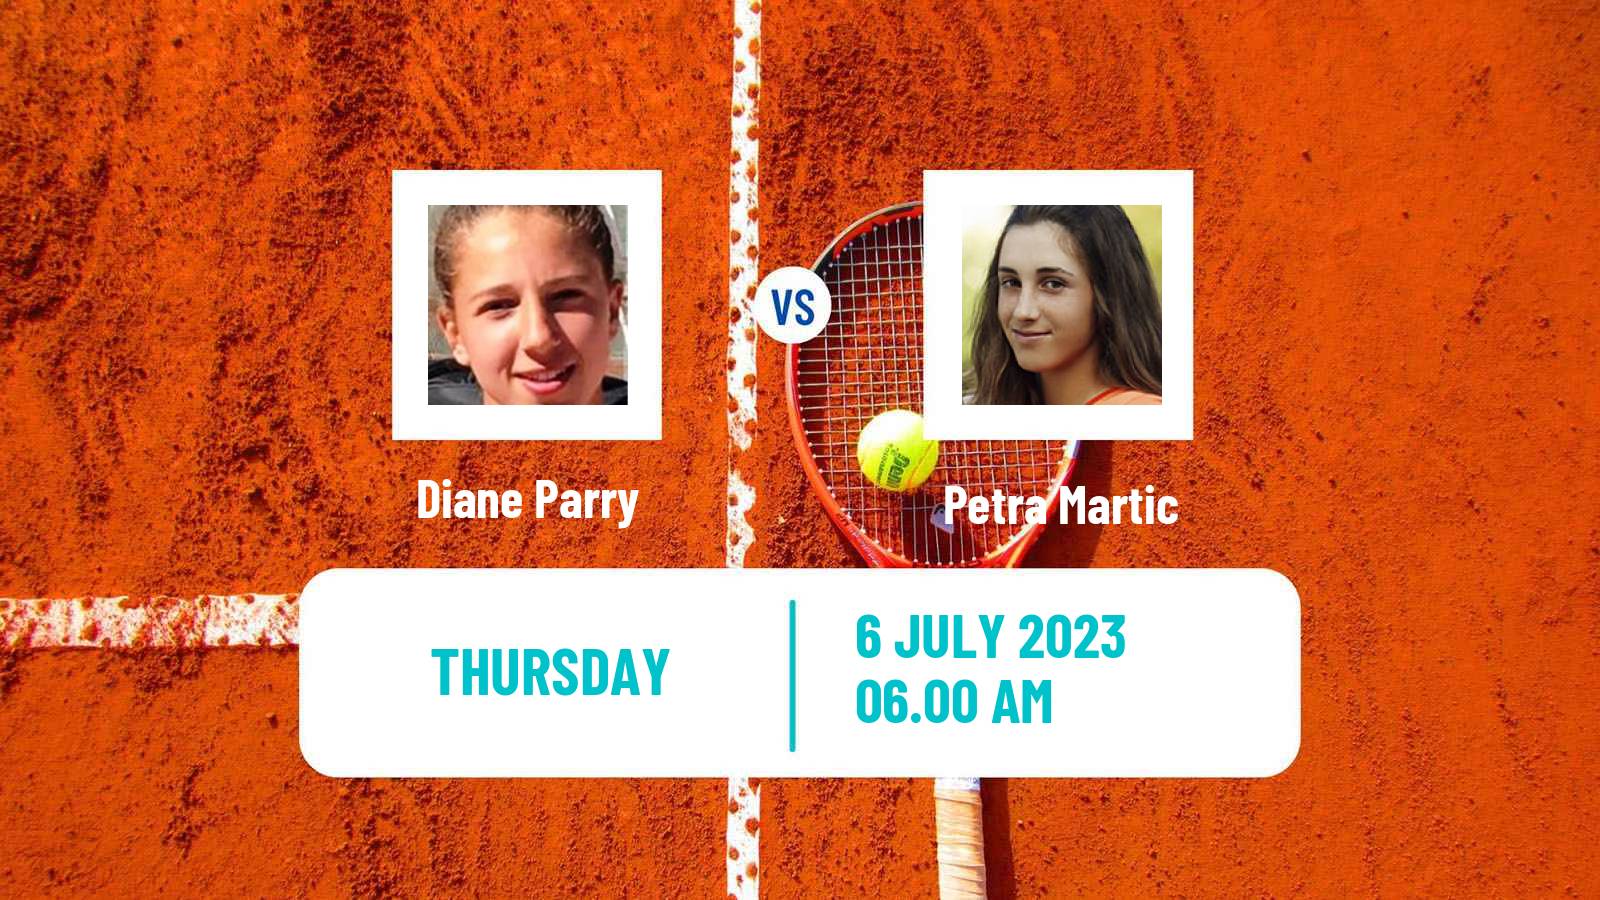 Tennis WTA Wimbledon Diane Parry - Petra Martic